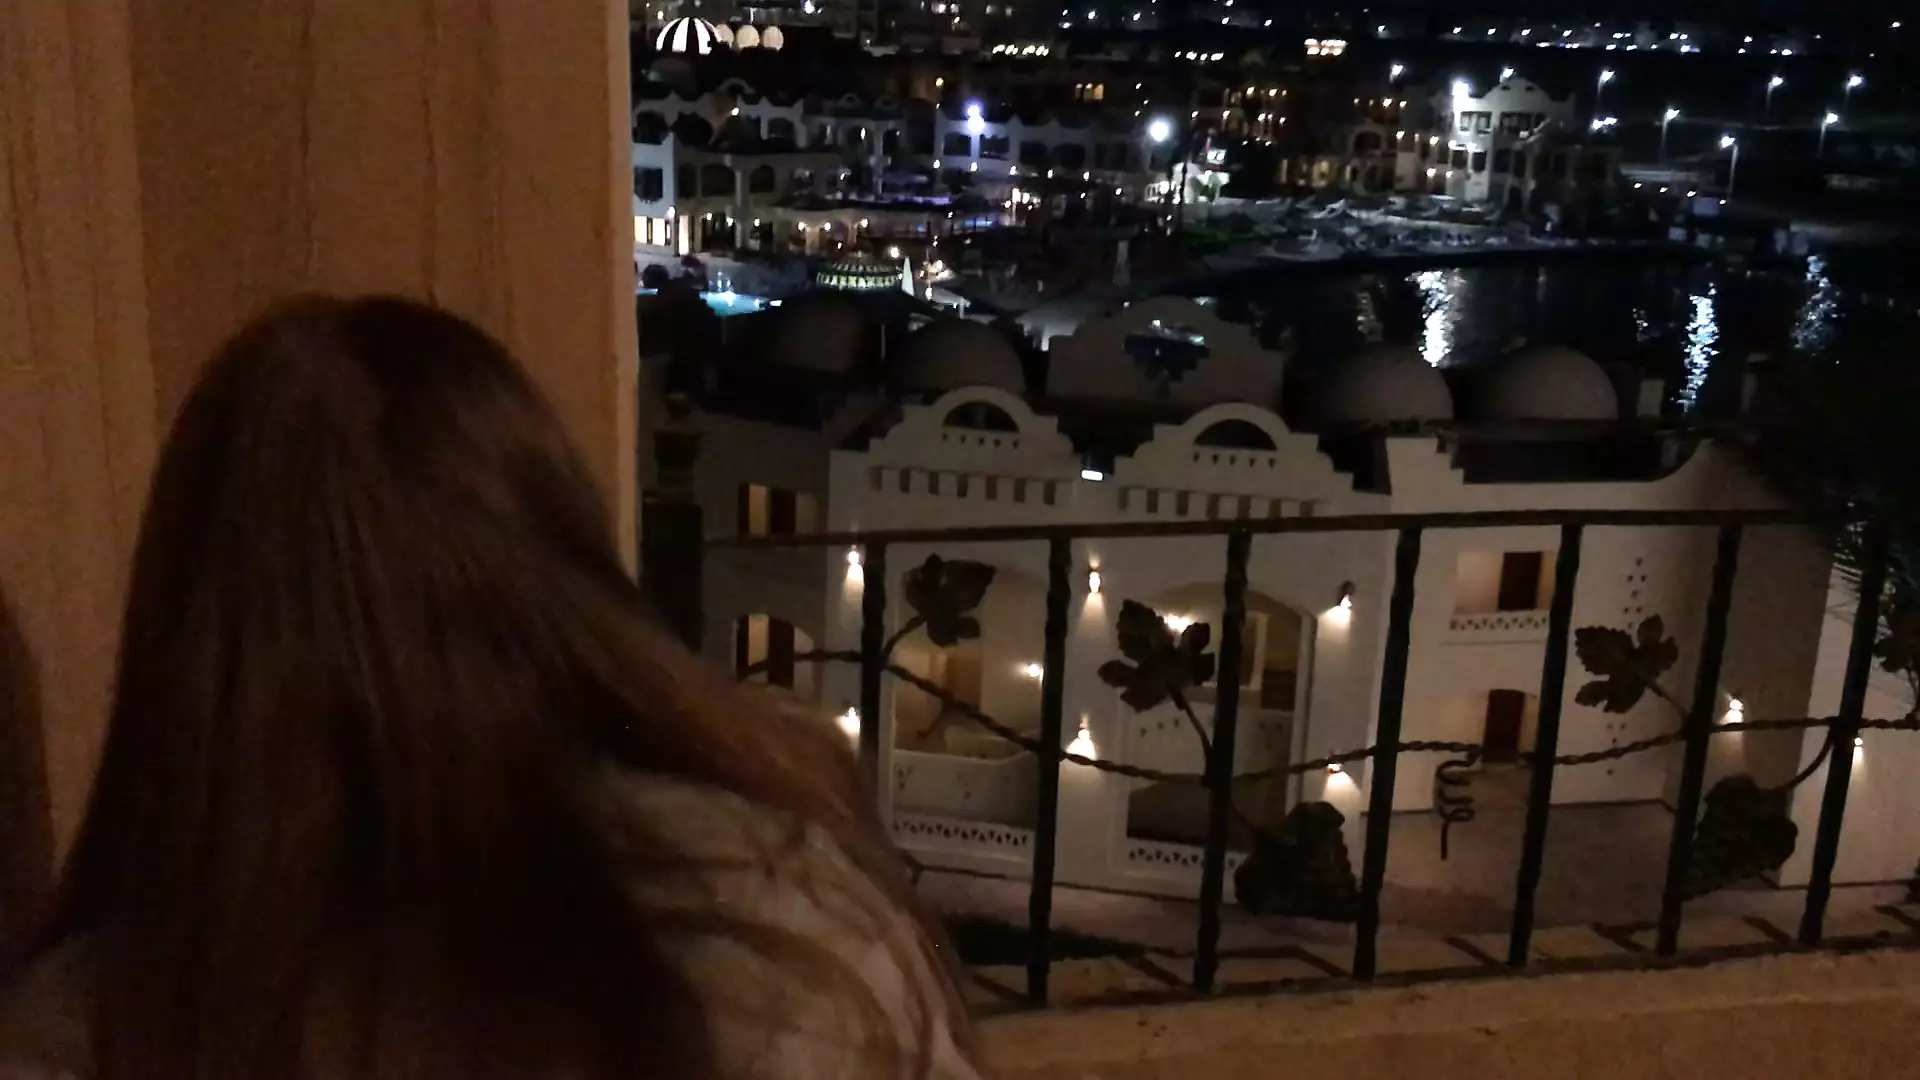 Public fuck teen slut on hotel balcony photo